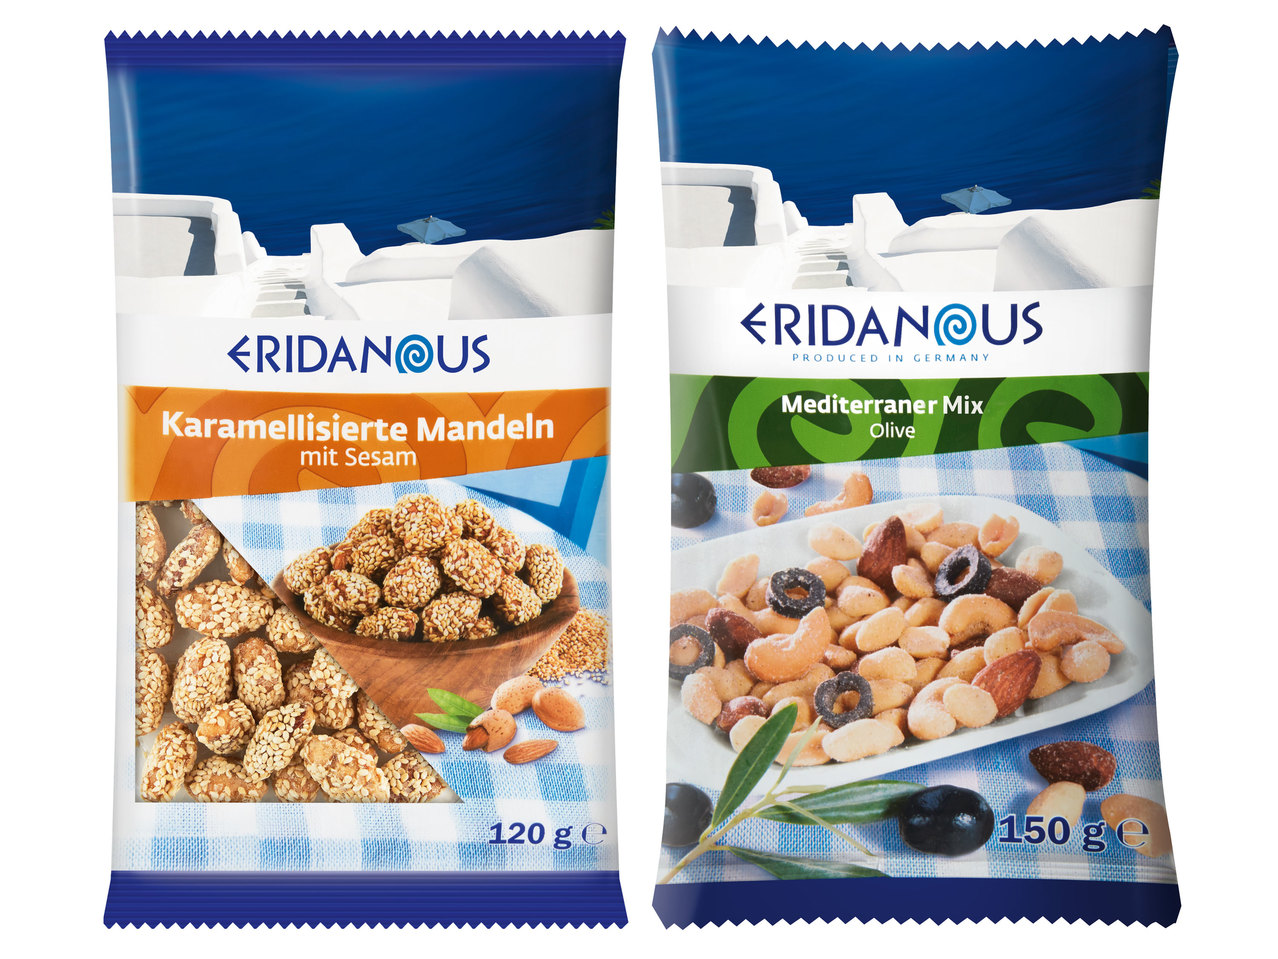 ERIDANOUS Mediterraner Nuss-Mix oder Karamellisierte Nüsse